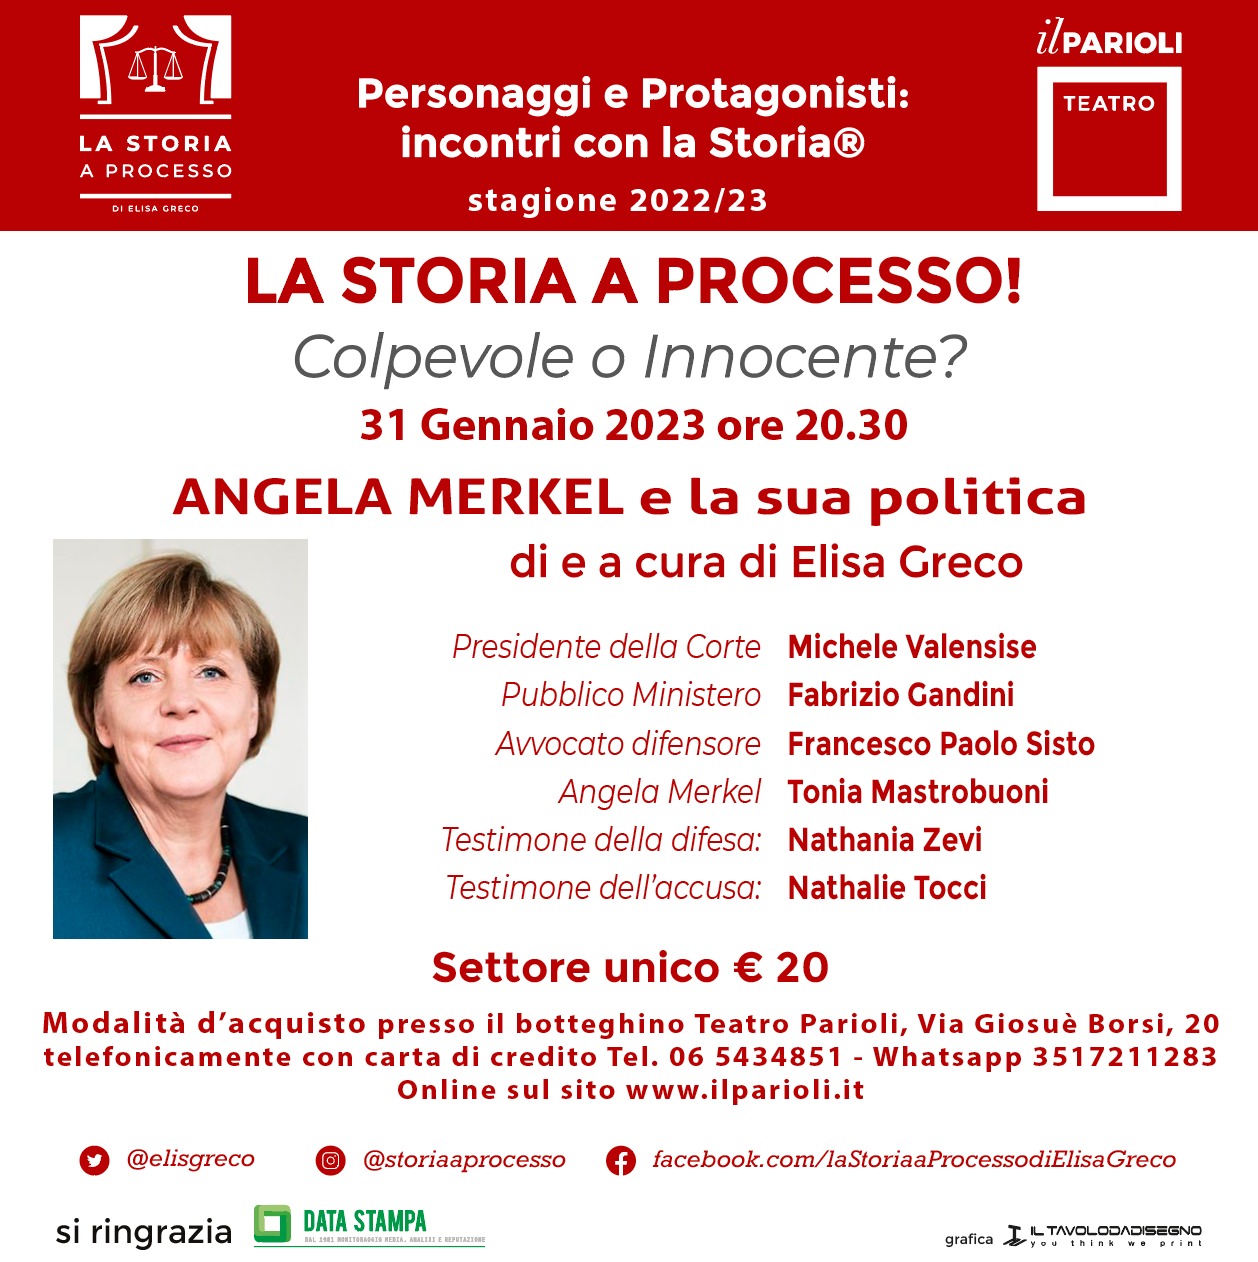 La Storia a Processo! Colpevole o innocente : Angela Merkel e la sua politica - Roma - Teatro Parioli - 31 gennaio 2023 - ore 20.30